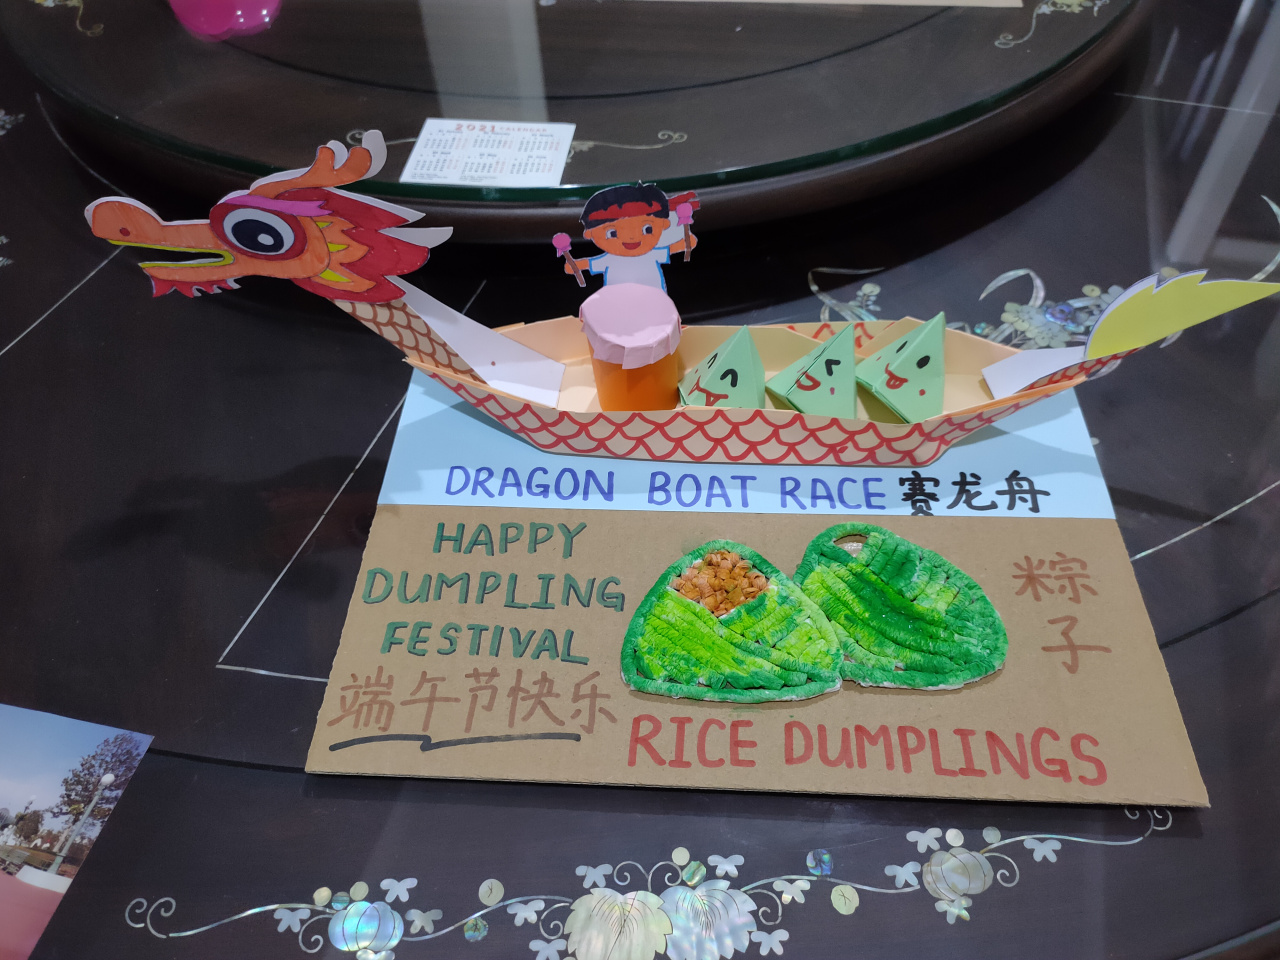 Dumpling festival art and craft